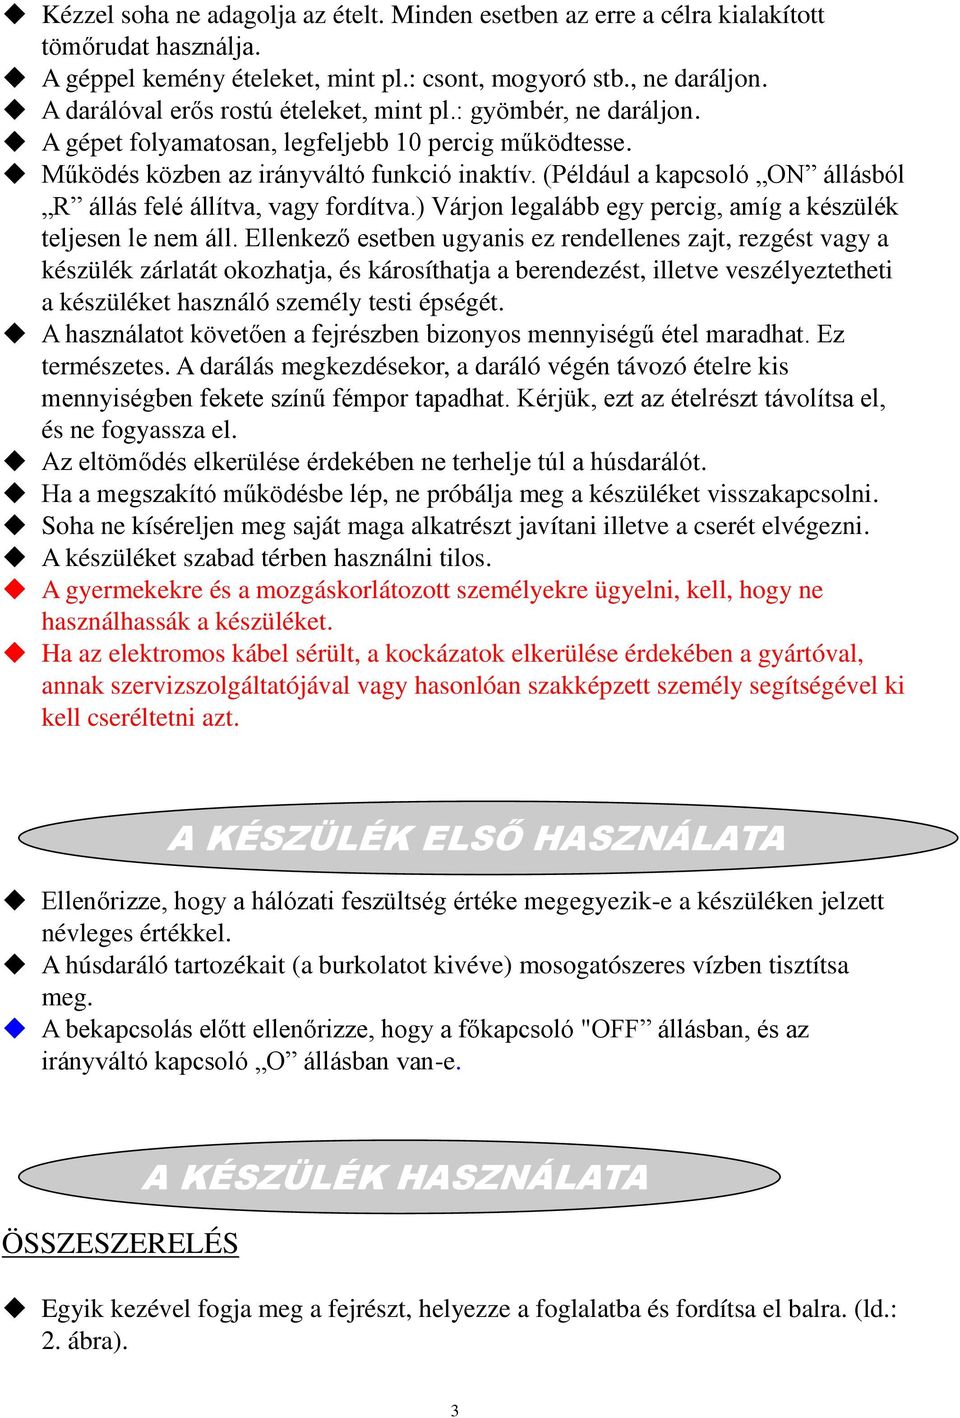 HÚSDARÁLÓ HASZNÁLATI UTASÍTÁS Modellszám: MG PDF Free Download